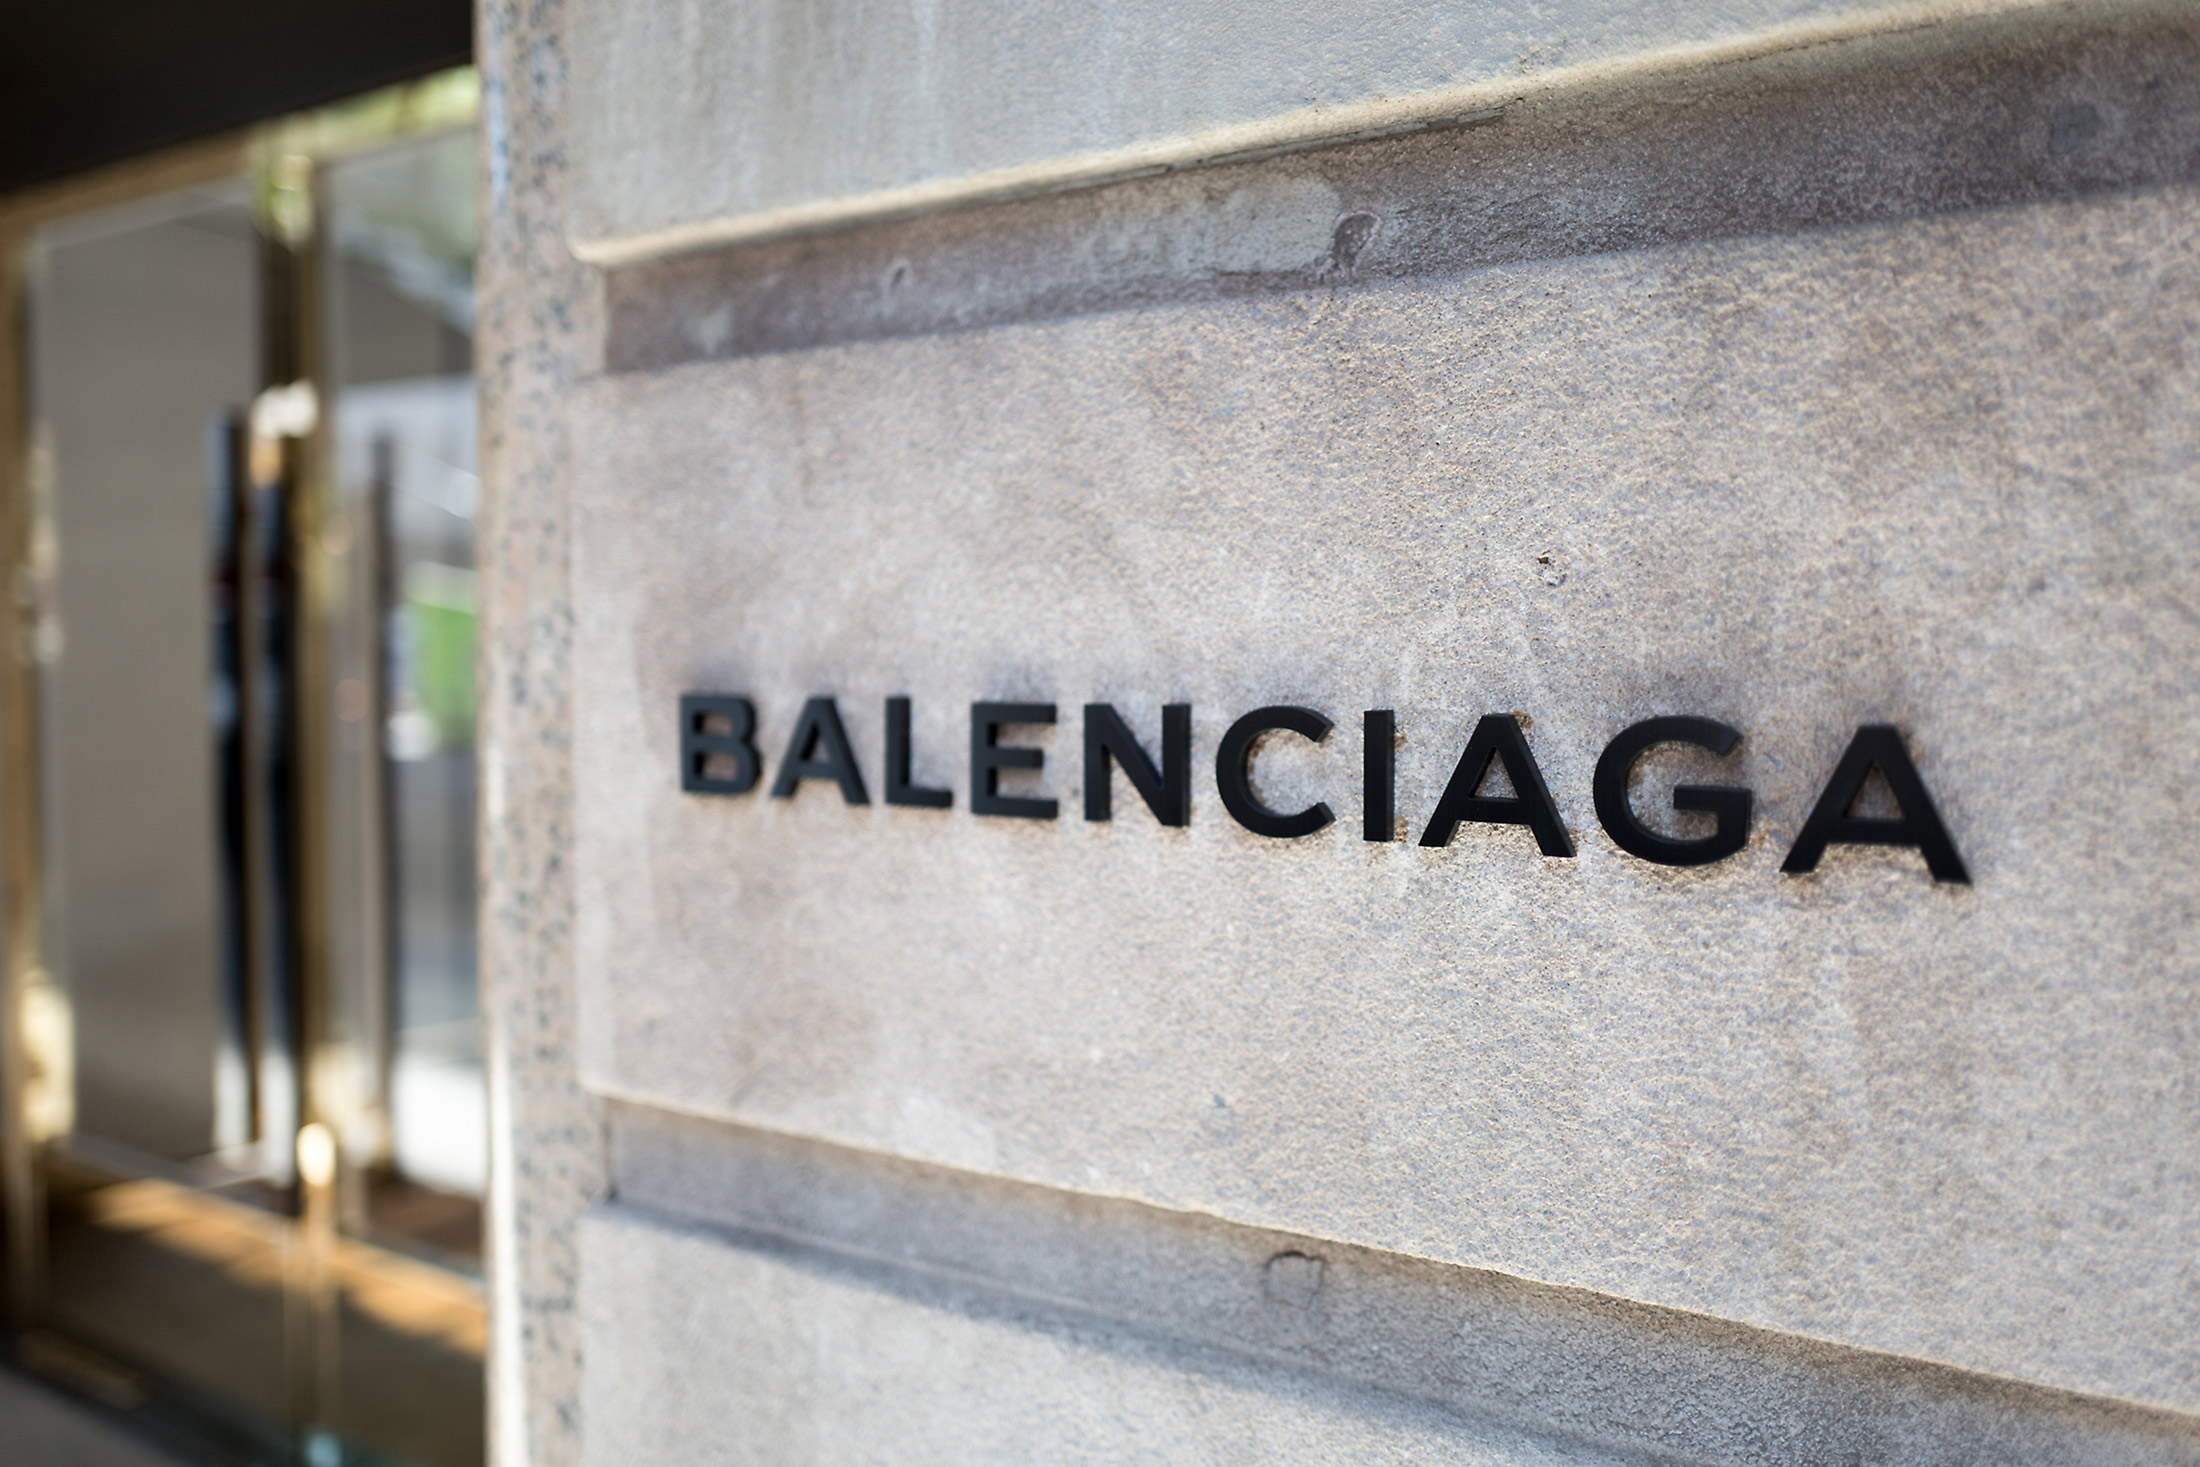 Balenciaga execs break silence over inappropriate images of